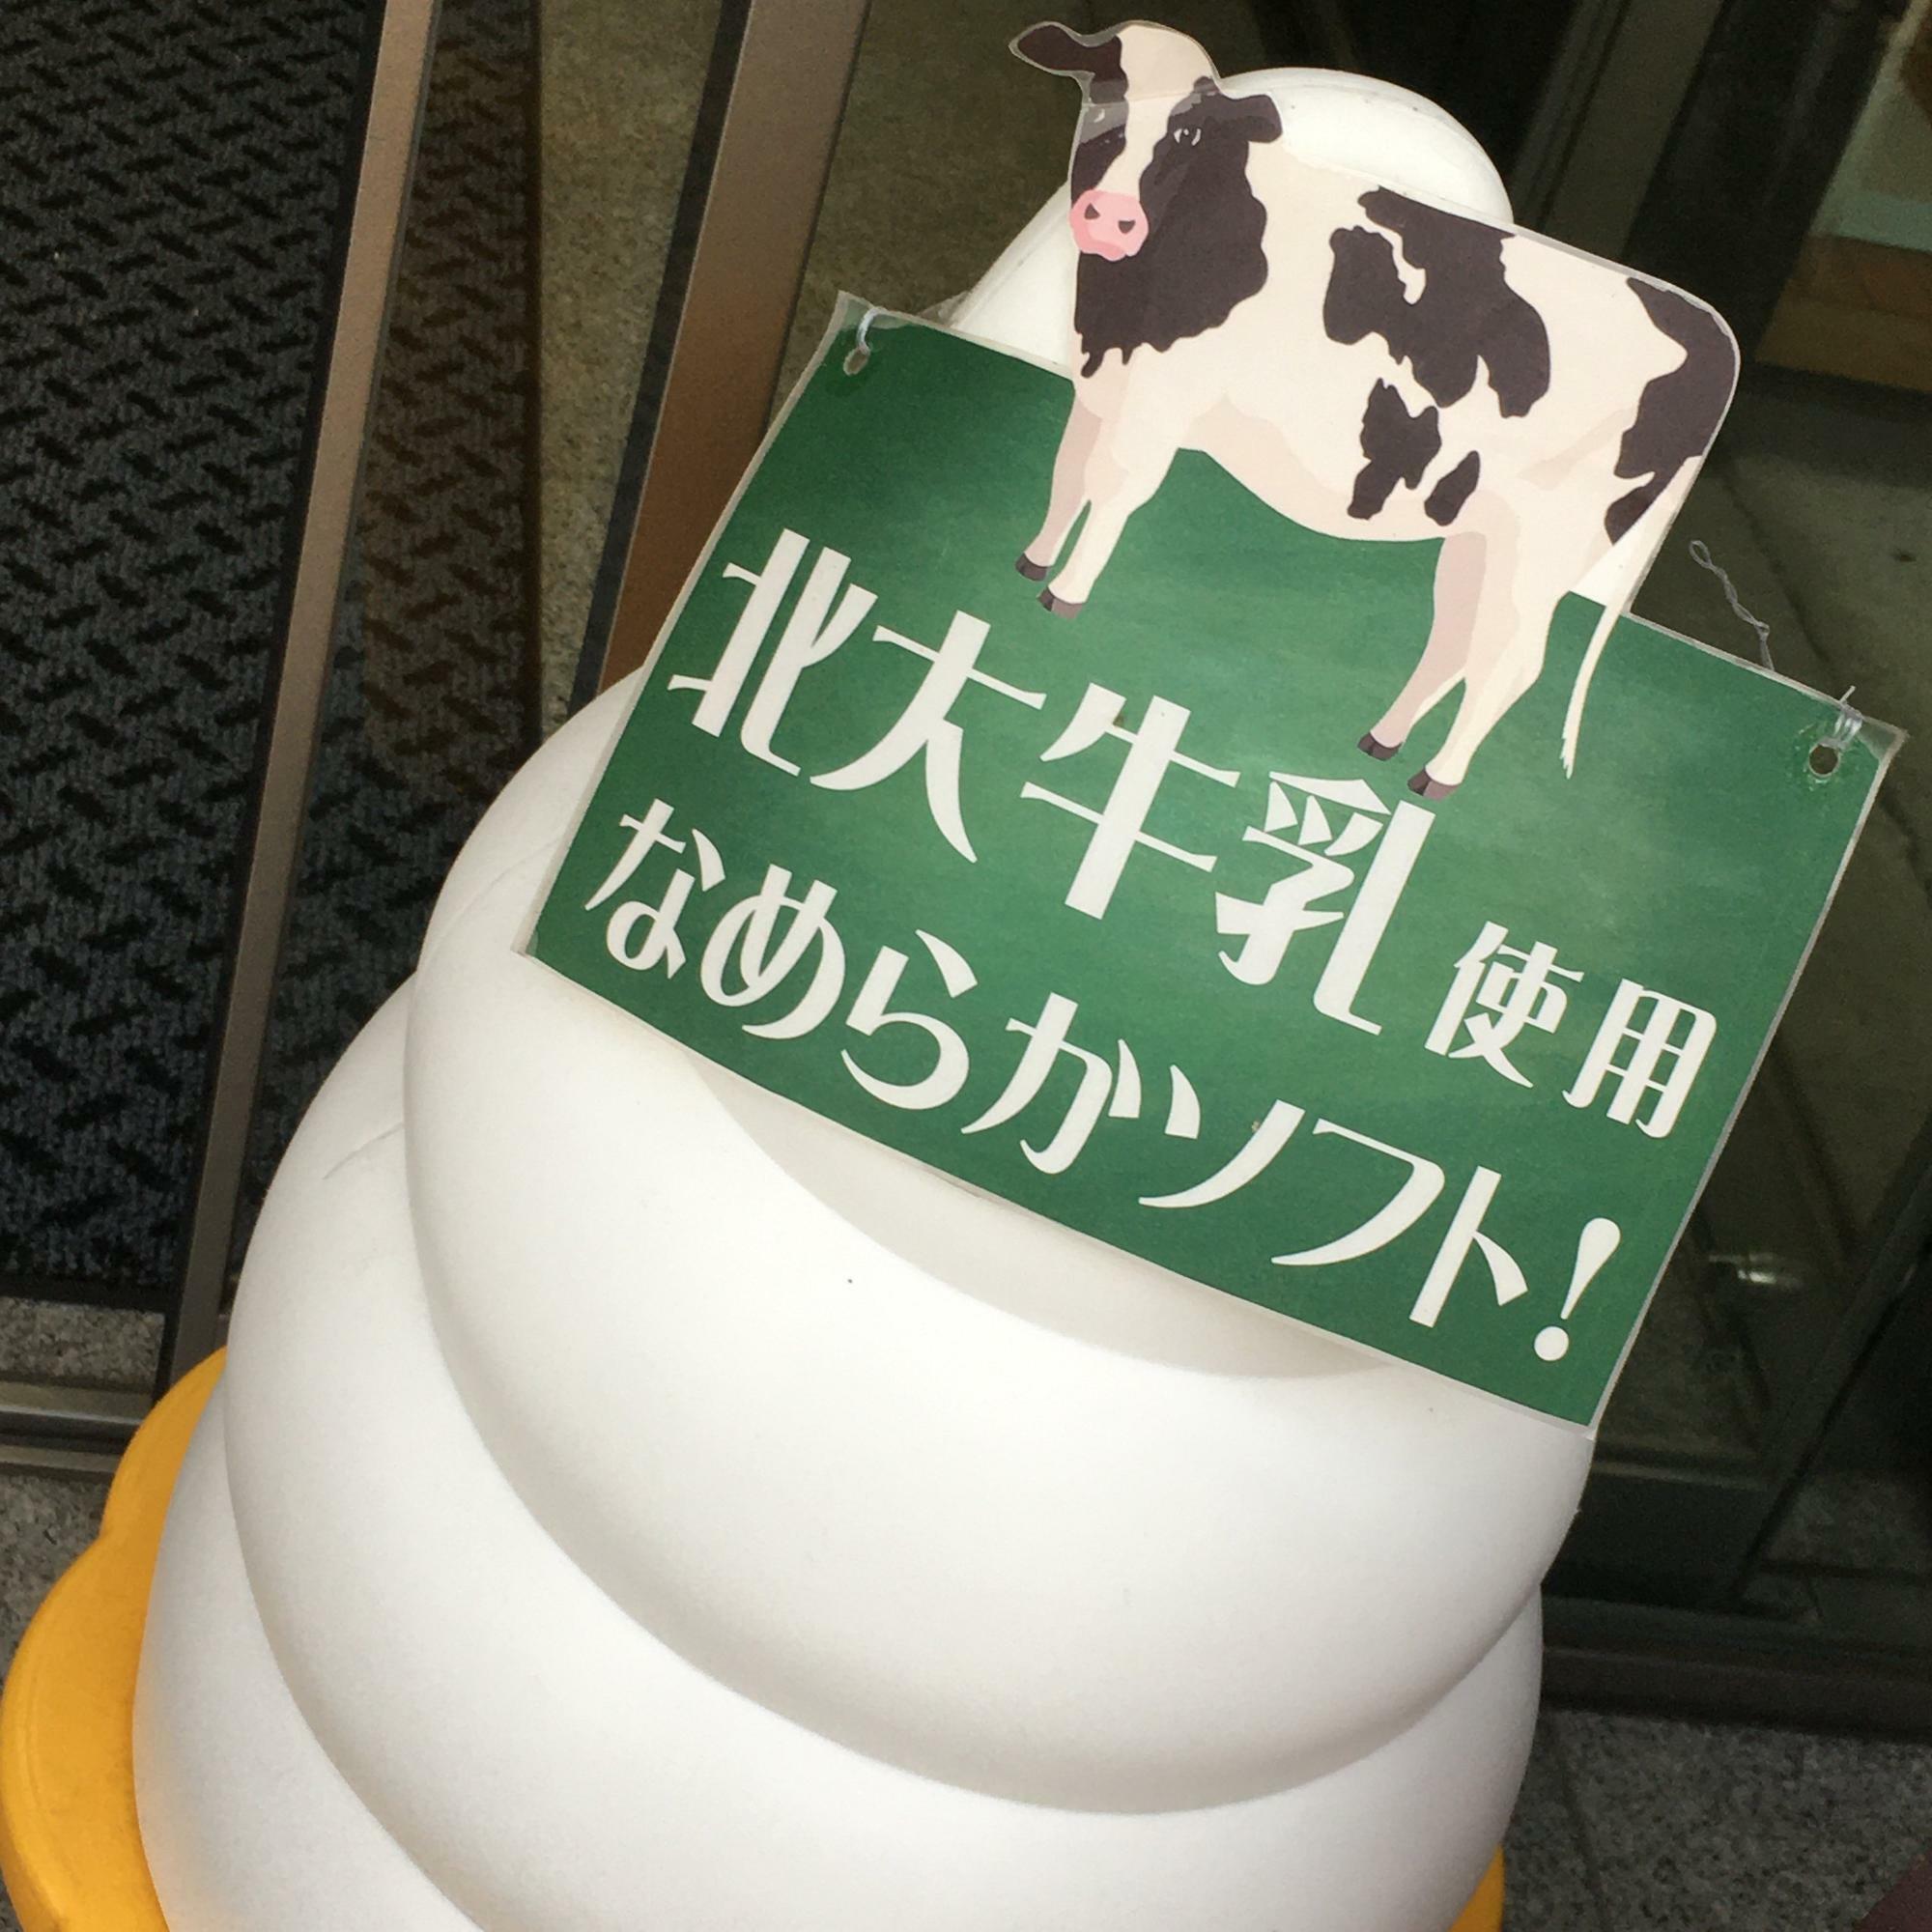 ごはんカフェで提供しているソフトクリームは、北大構内の牧場の牛のミルクが使われています